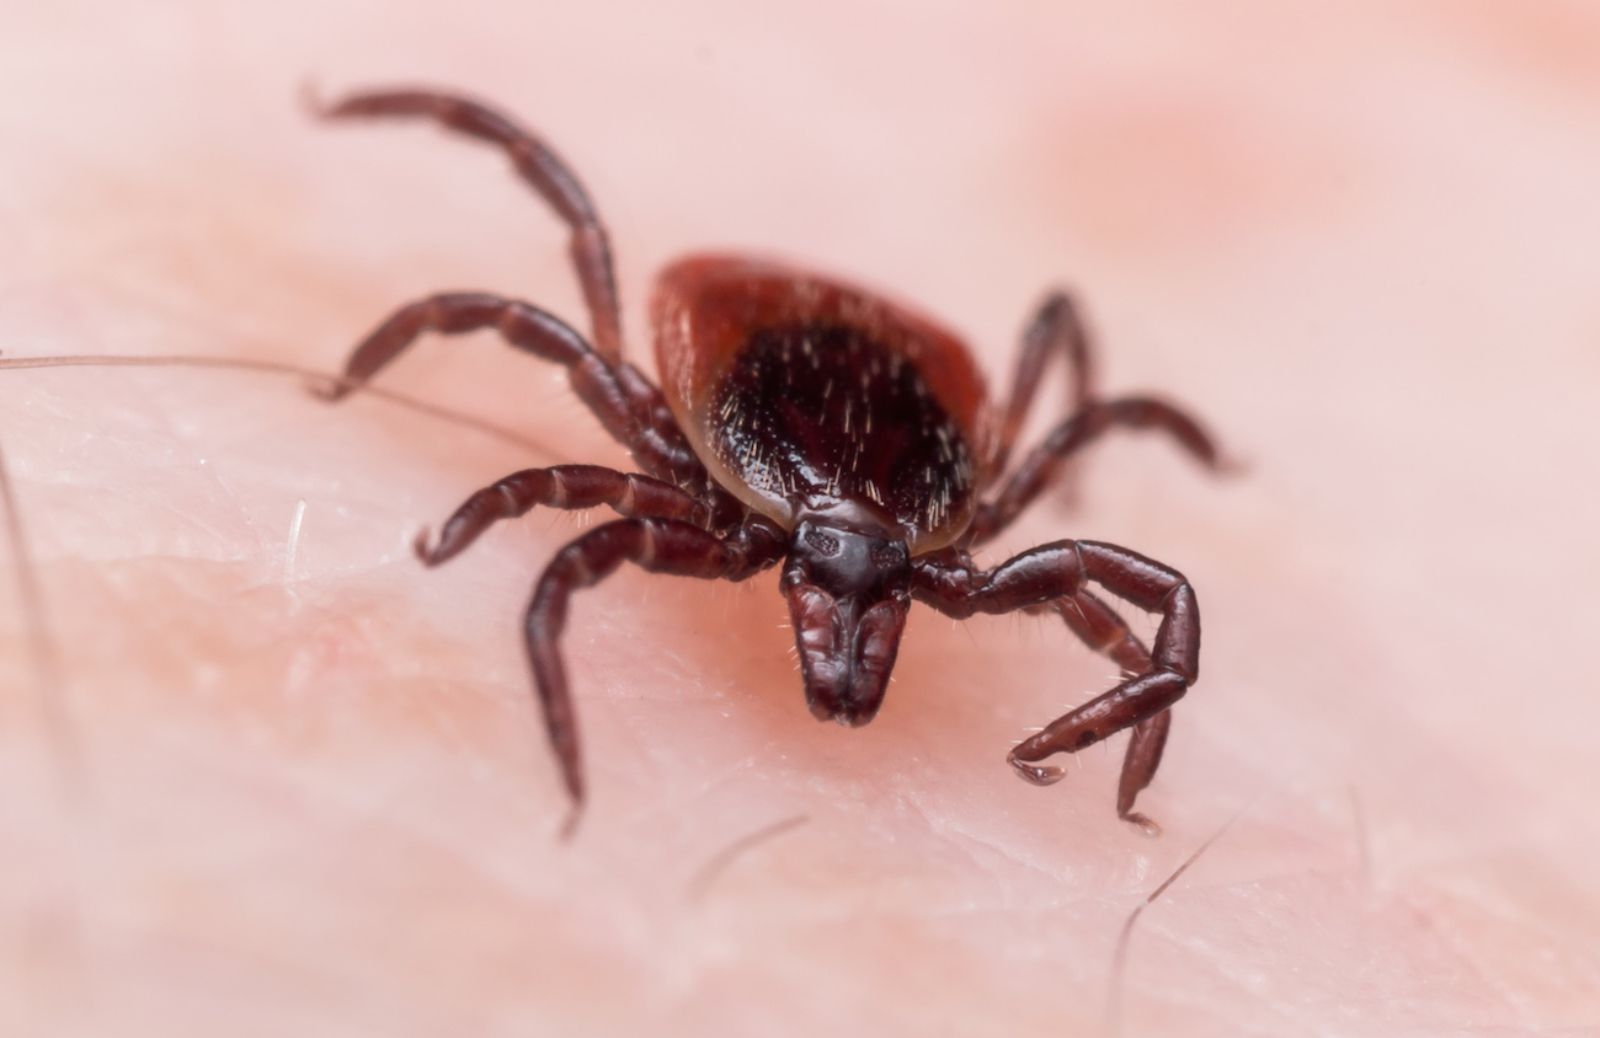 Malattia di Lyme: come riconoscerla dai sintomi